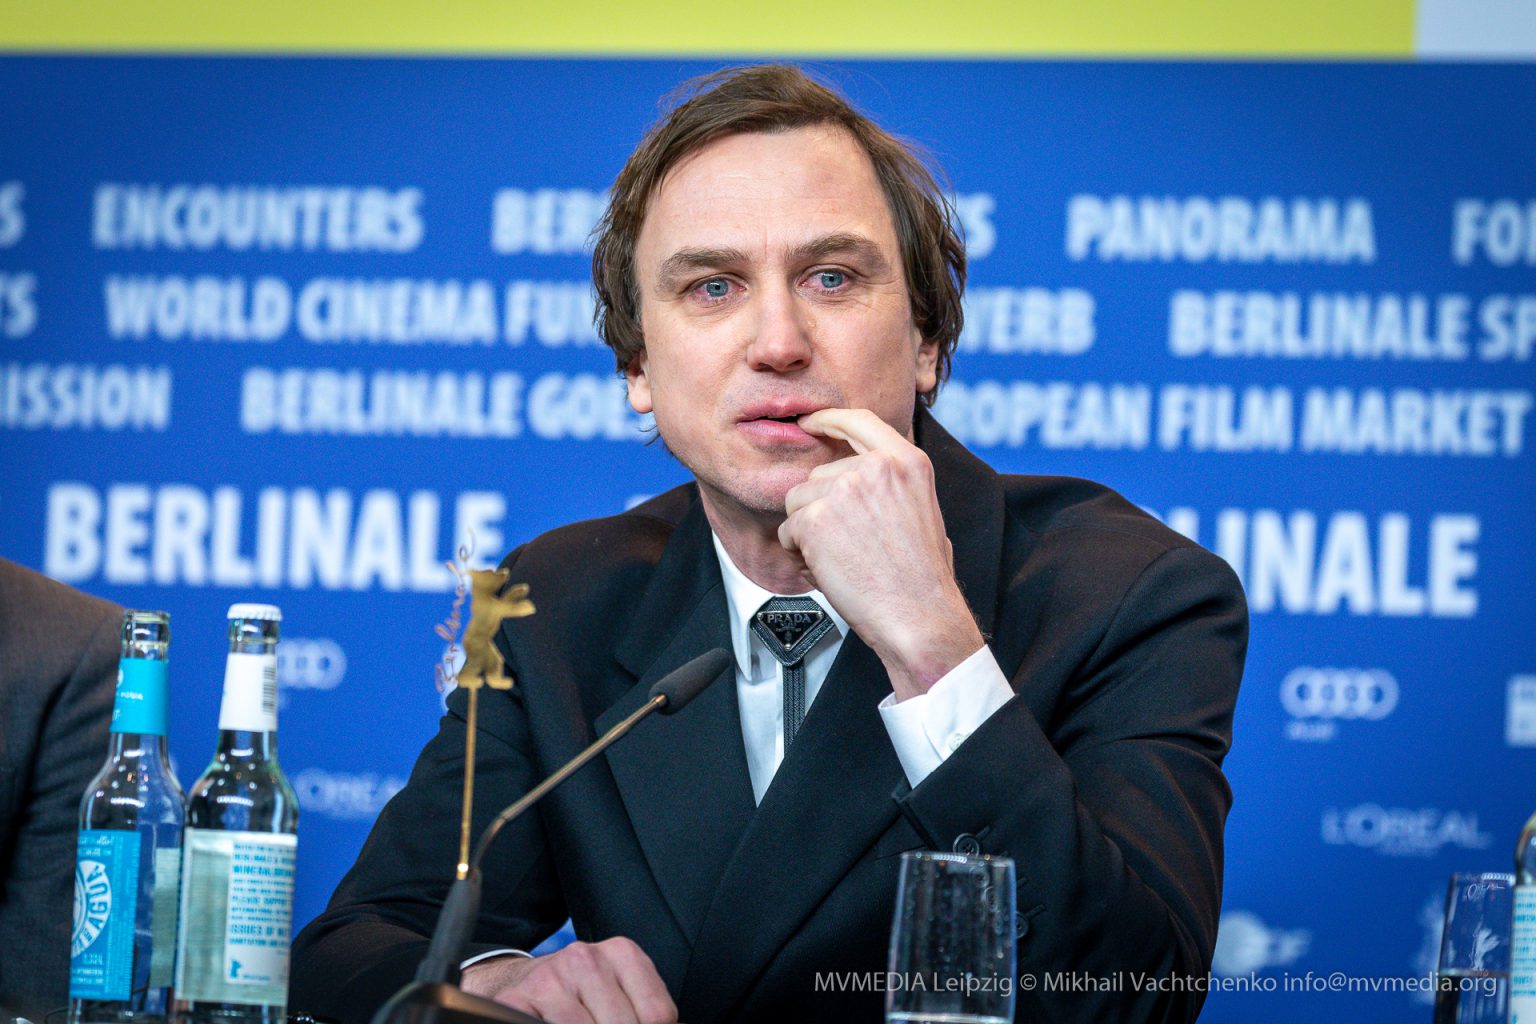 Lars Eidinger weint auf der Pressekonferenz Berlinale Persian Lessons